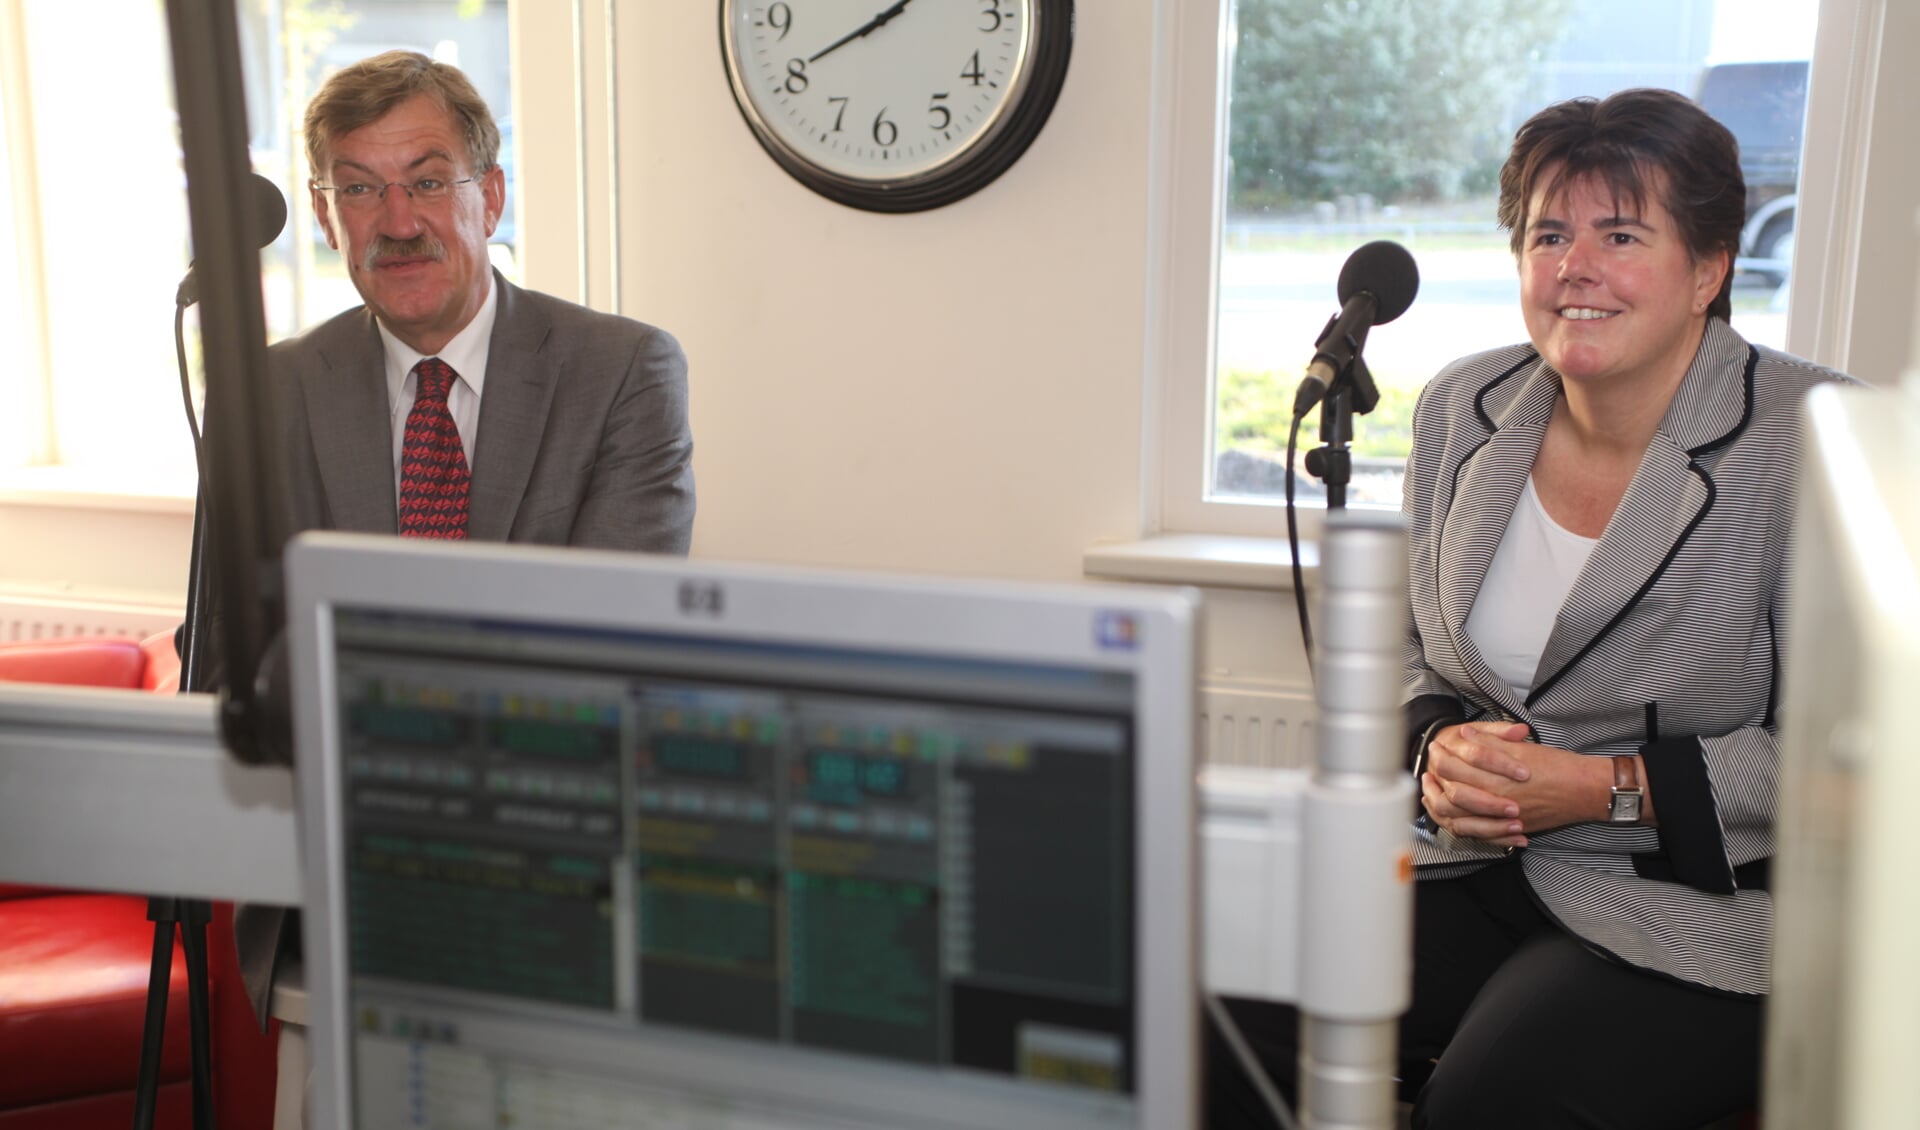 De beide burgemeesters Henk Hellegers en Ina Adema als gast in de studio van SkyLine RTV (Foto: Peter Kuijpers)